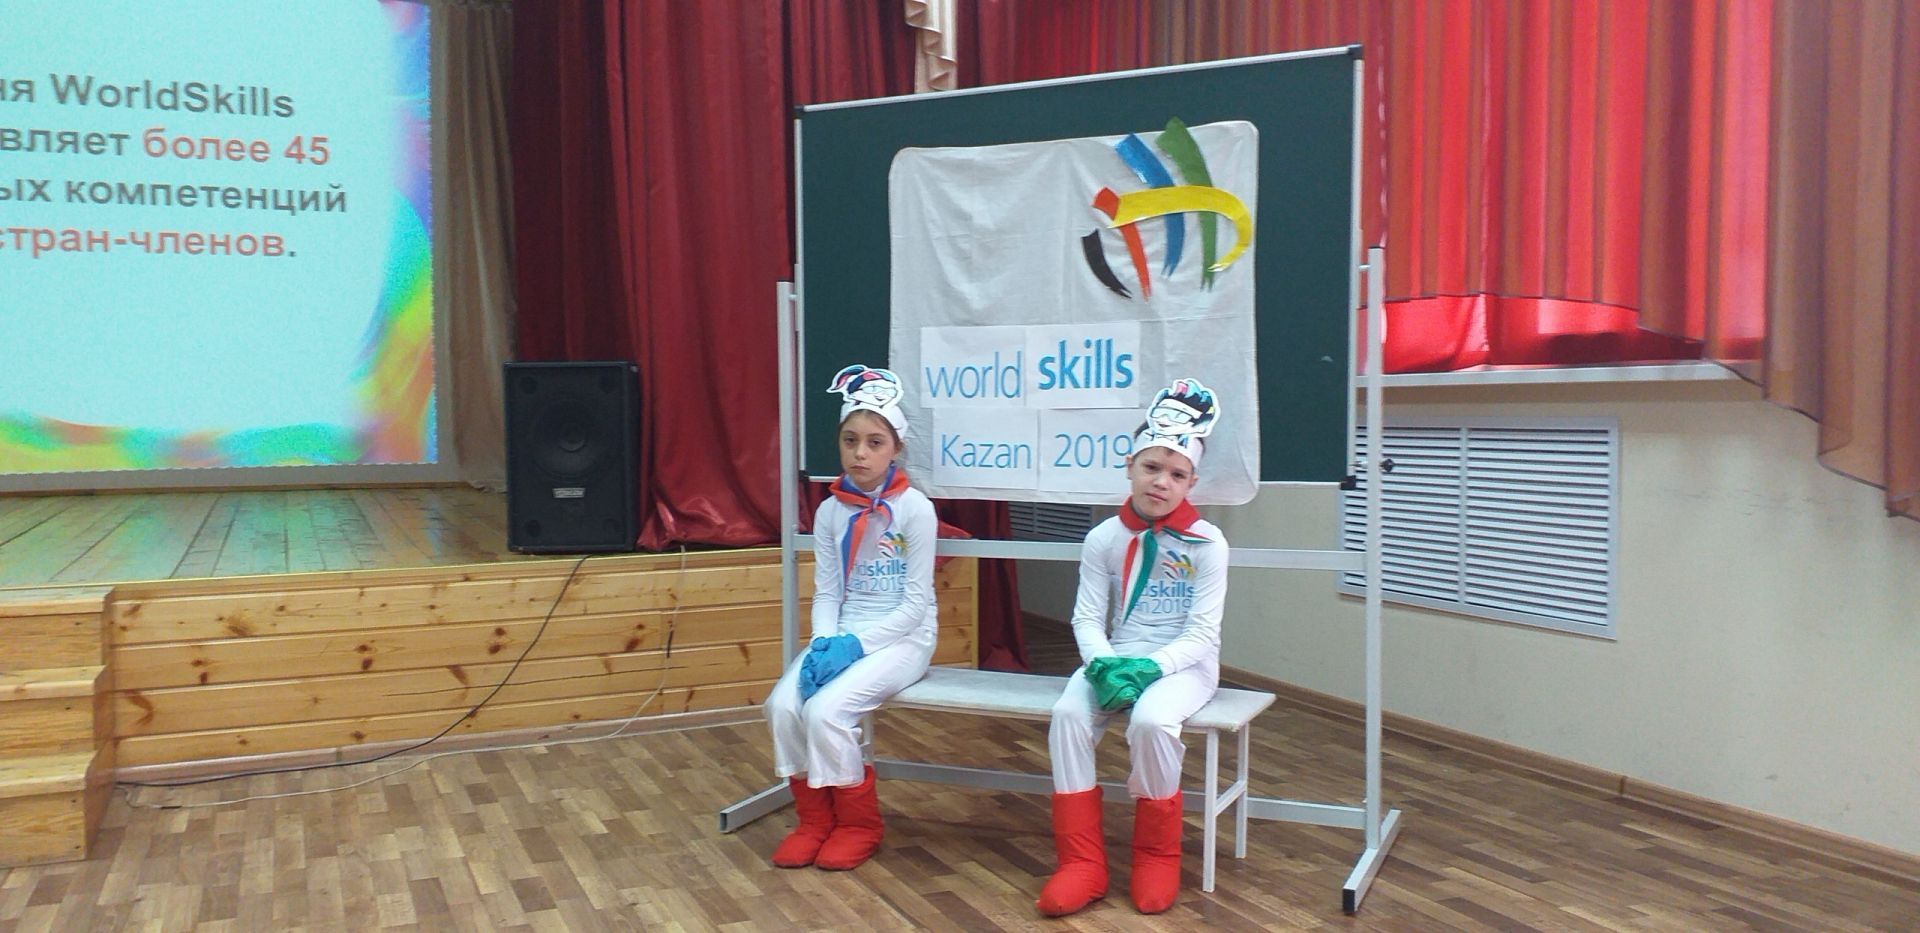 В санаторной школе Болгара прошёл урок «WorldSkills – путь к успеху!» (ФОТО)